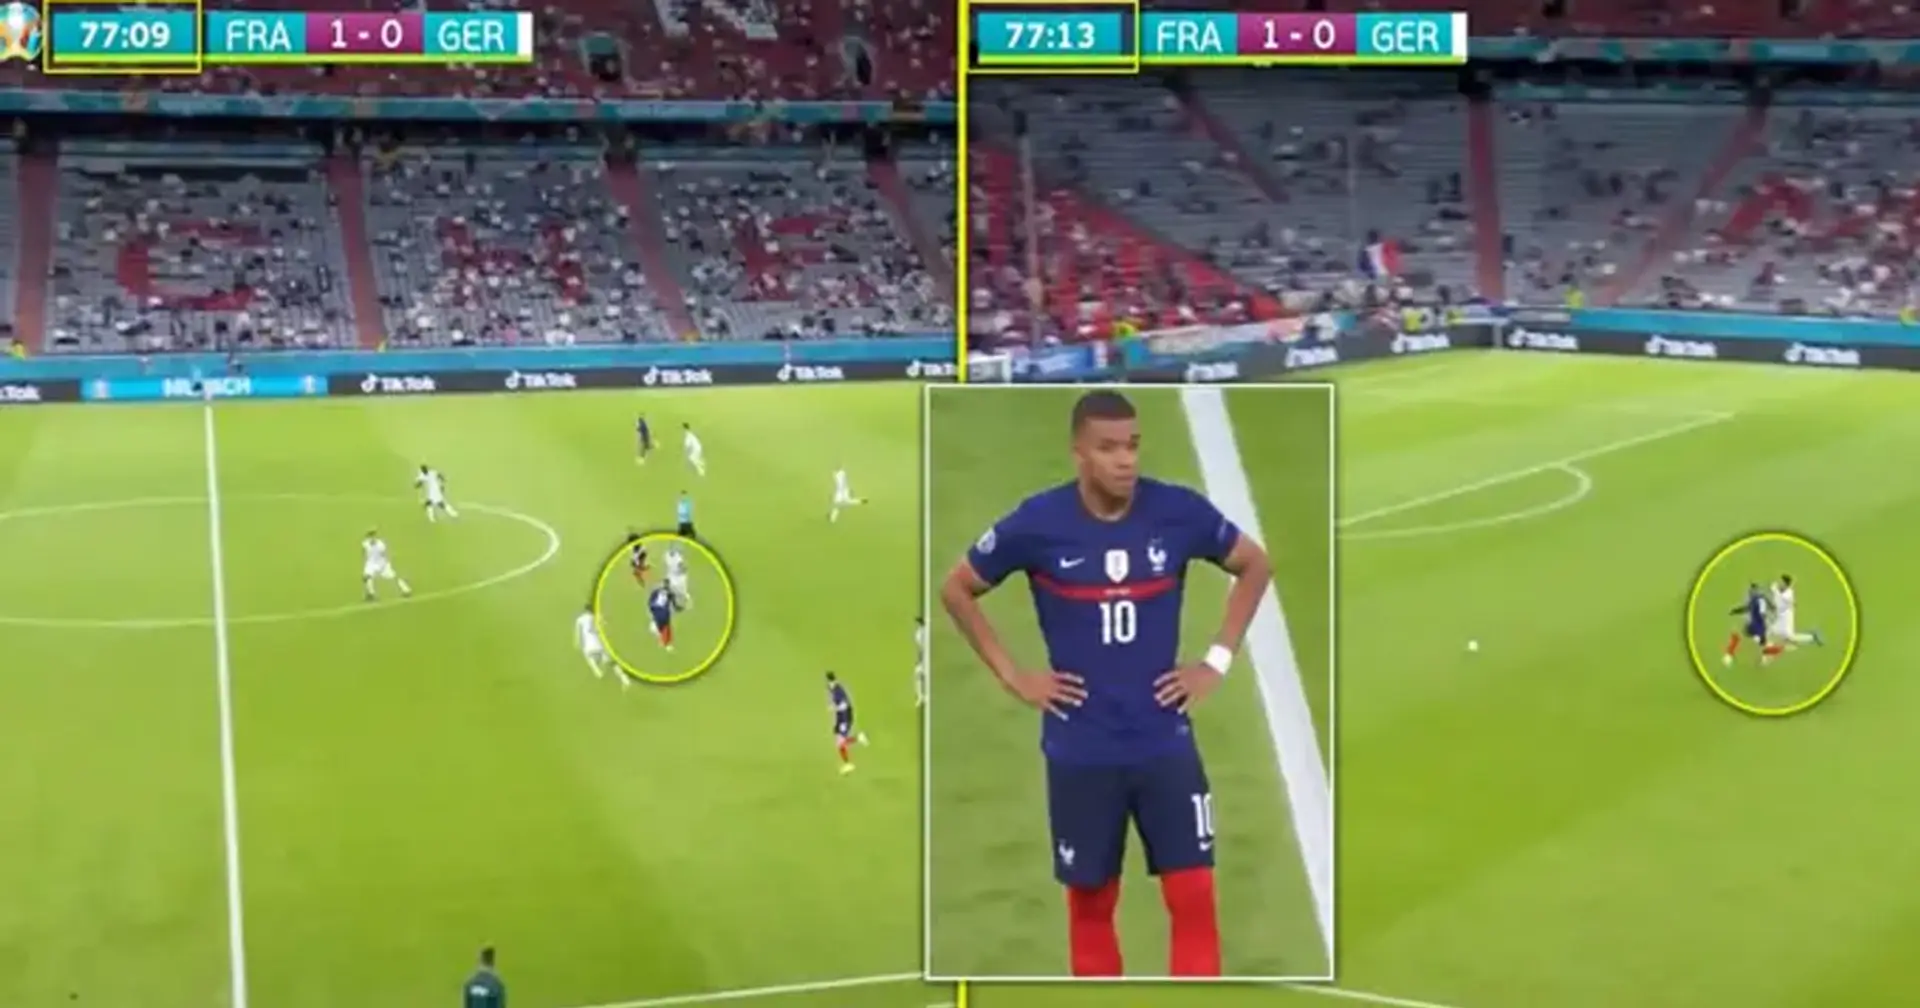 Los fanáticos ven un momento increíble durante el partido Francia-Alemania que destaca el escandaloso talento de Kylian Mbappé